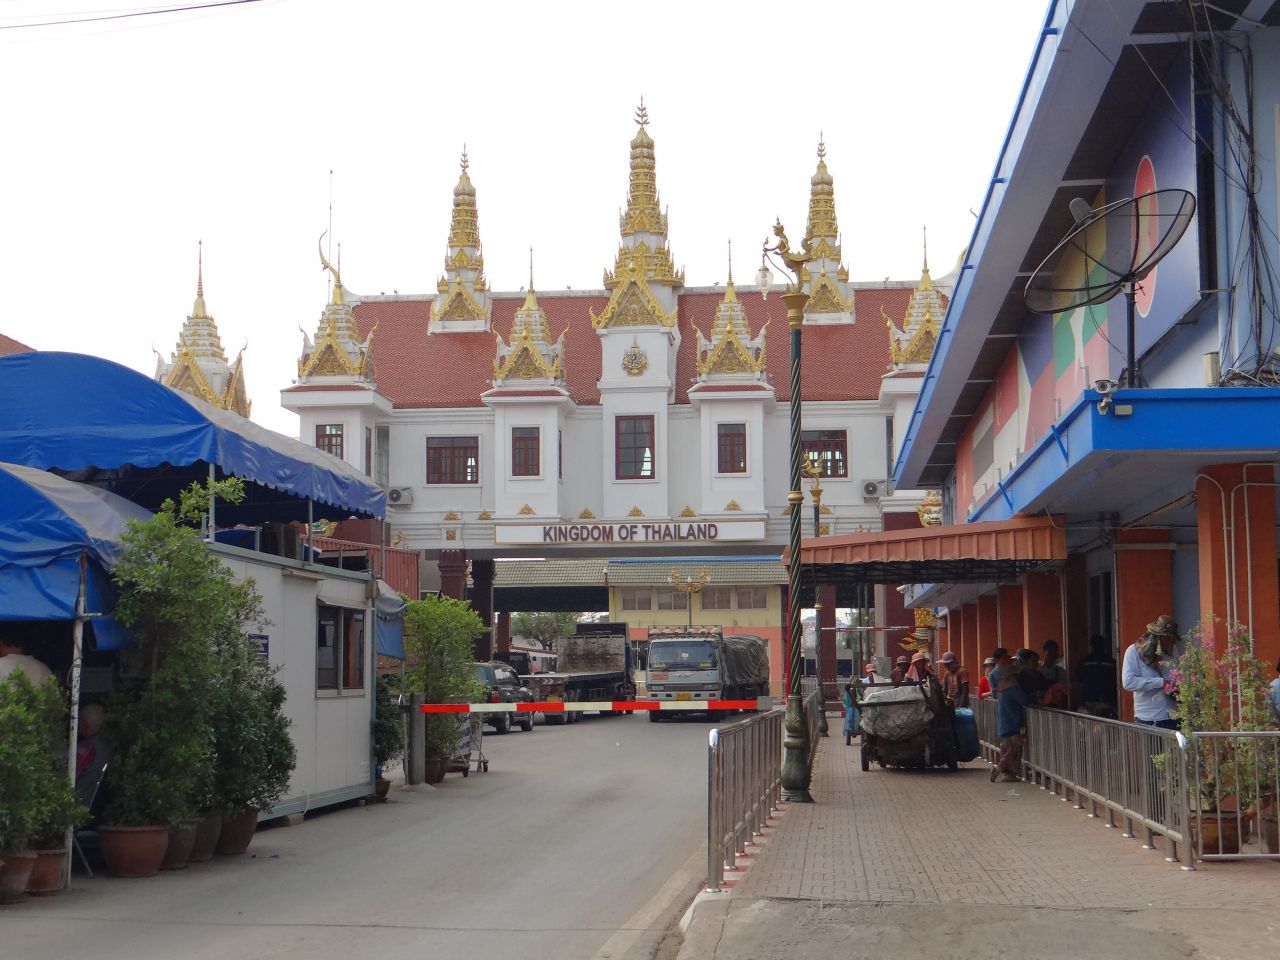 За спиной Королевство Тайланд. - Камбоджа, Лаос. Февраль 2014. Часть 1.<br> Путь в Камбоджу через Узбекистан.